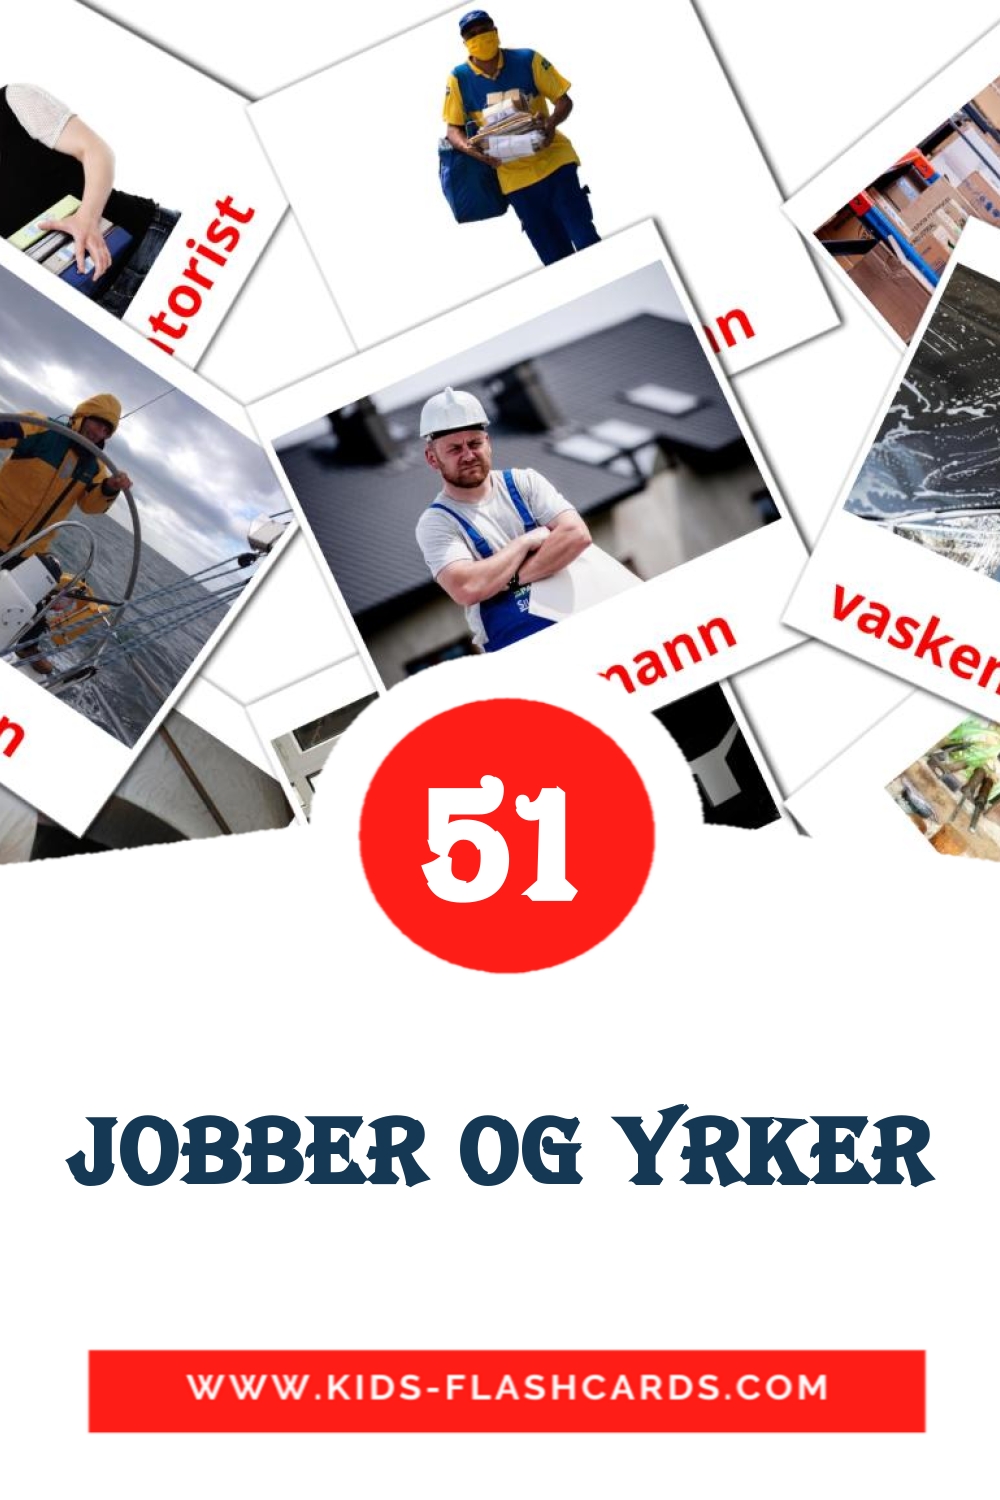 51 tarjetas didacticas de Jobber og yrker para el jardín de infancia en noruego